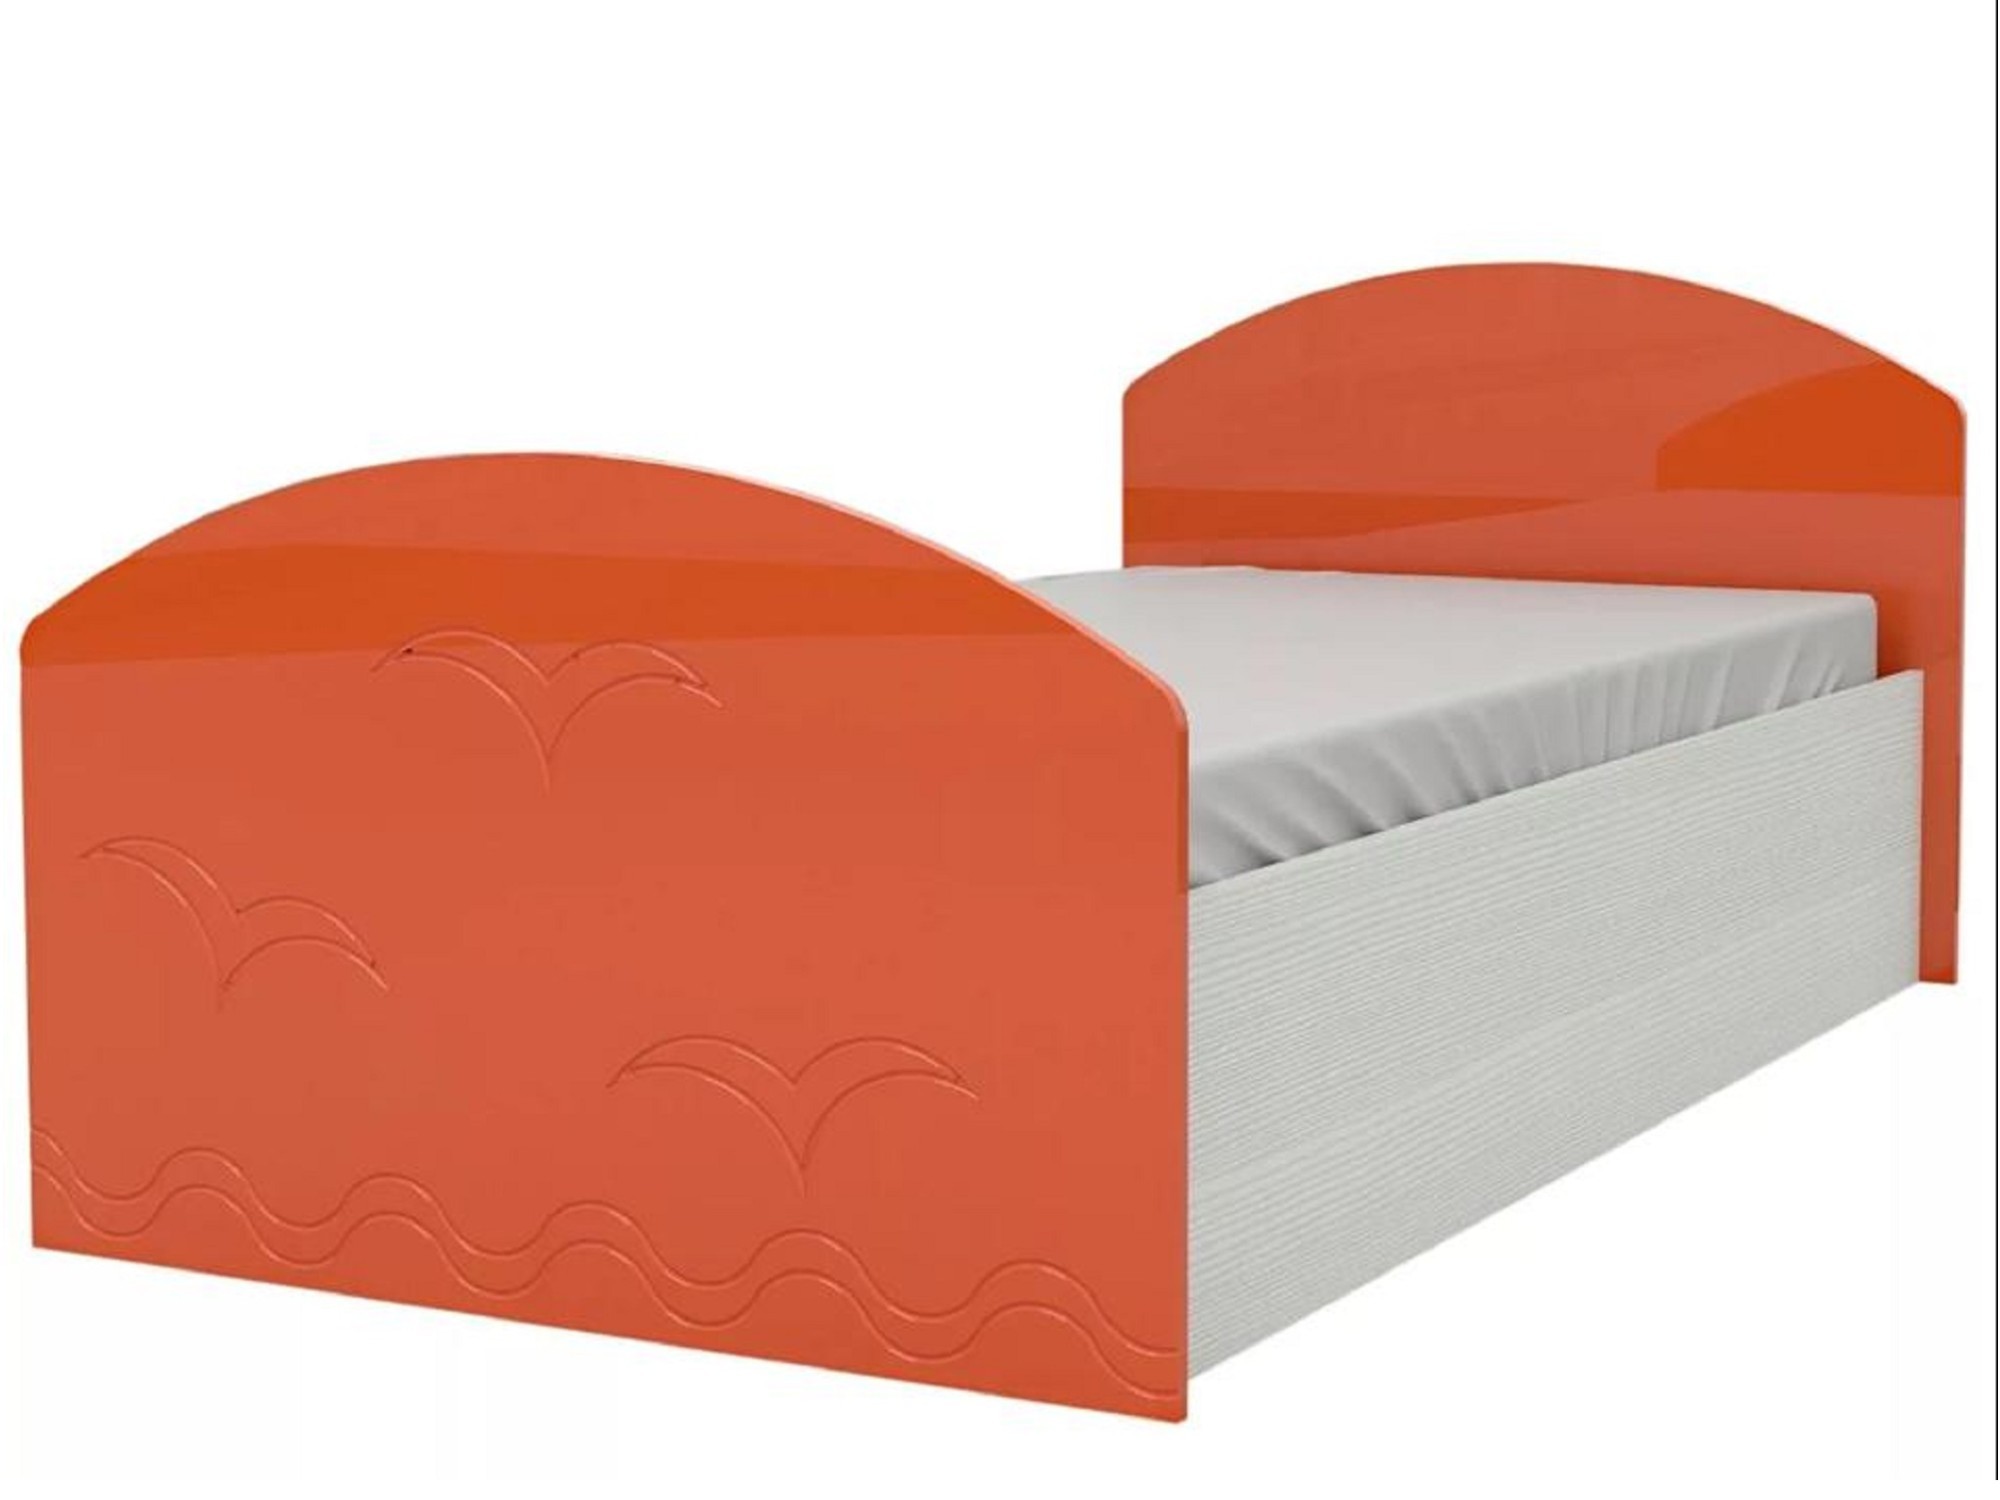 Юниор-2 Детская кровать 80, металлик (Оранжевый металлик, Дуб белёный) Оранжевый металлик, МДФ, ЛДСП юниор 2 детская кровать 80 металлик фиолетовый металлик дуб белёный фиолетовый металлик мдф лдсп